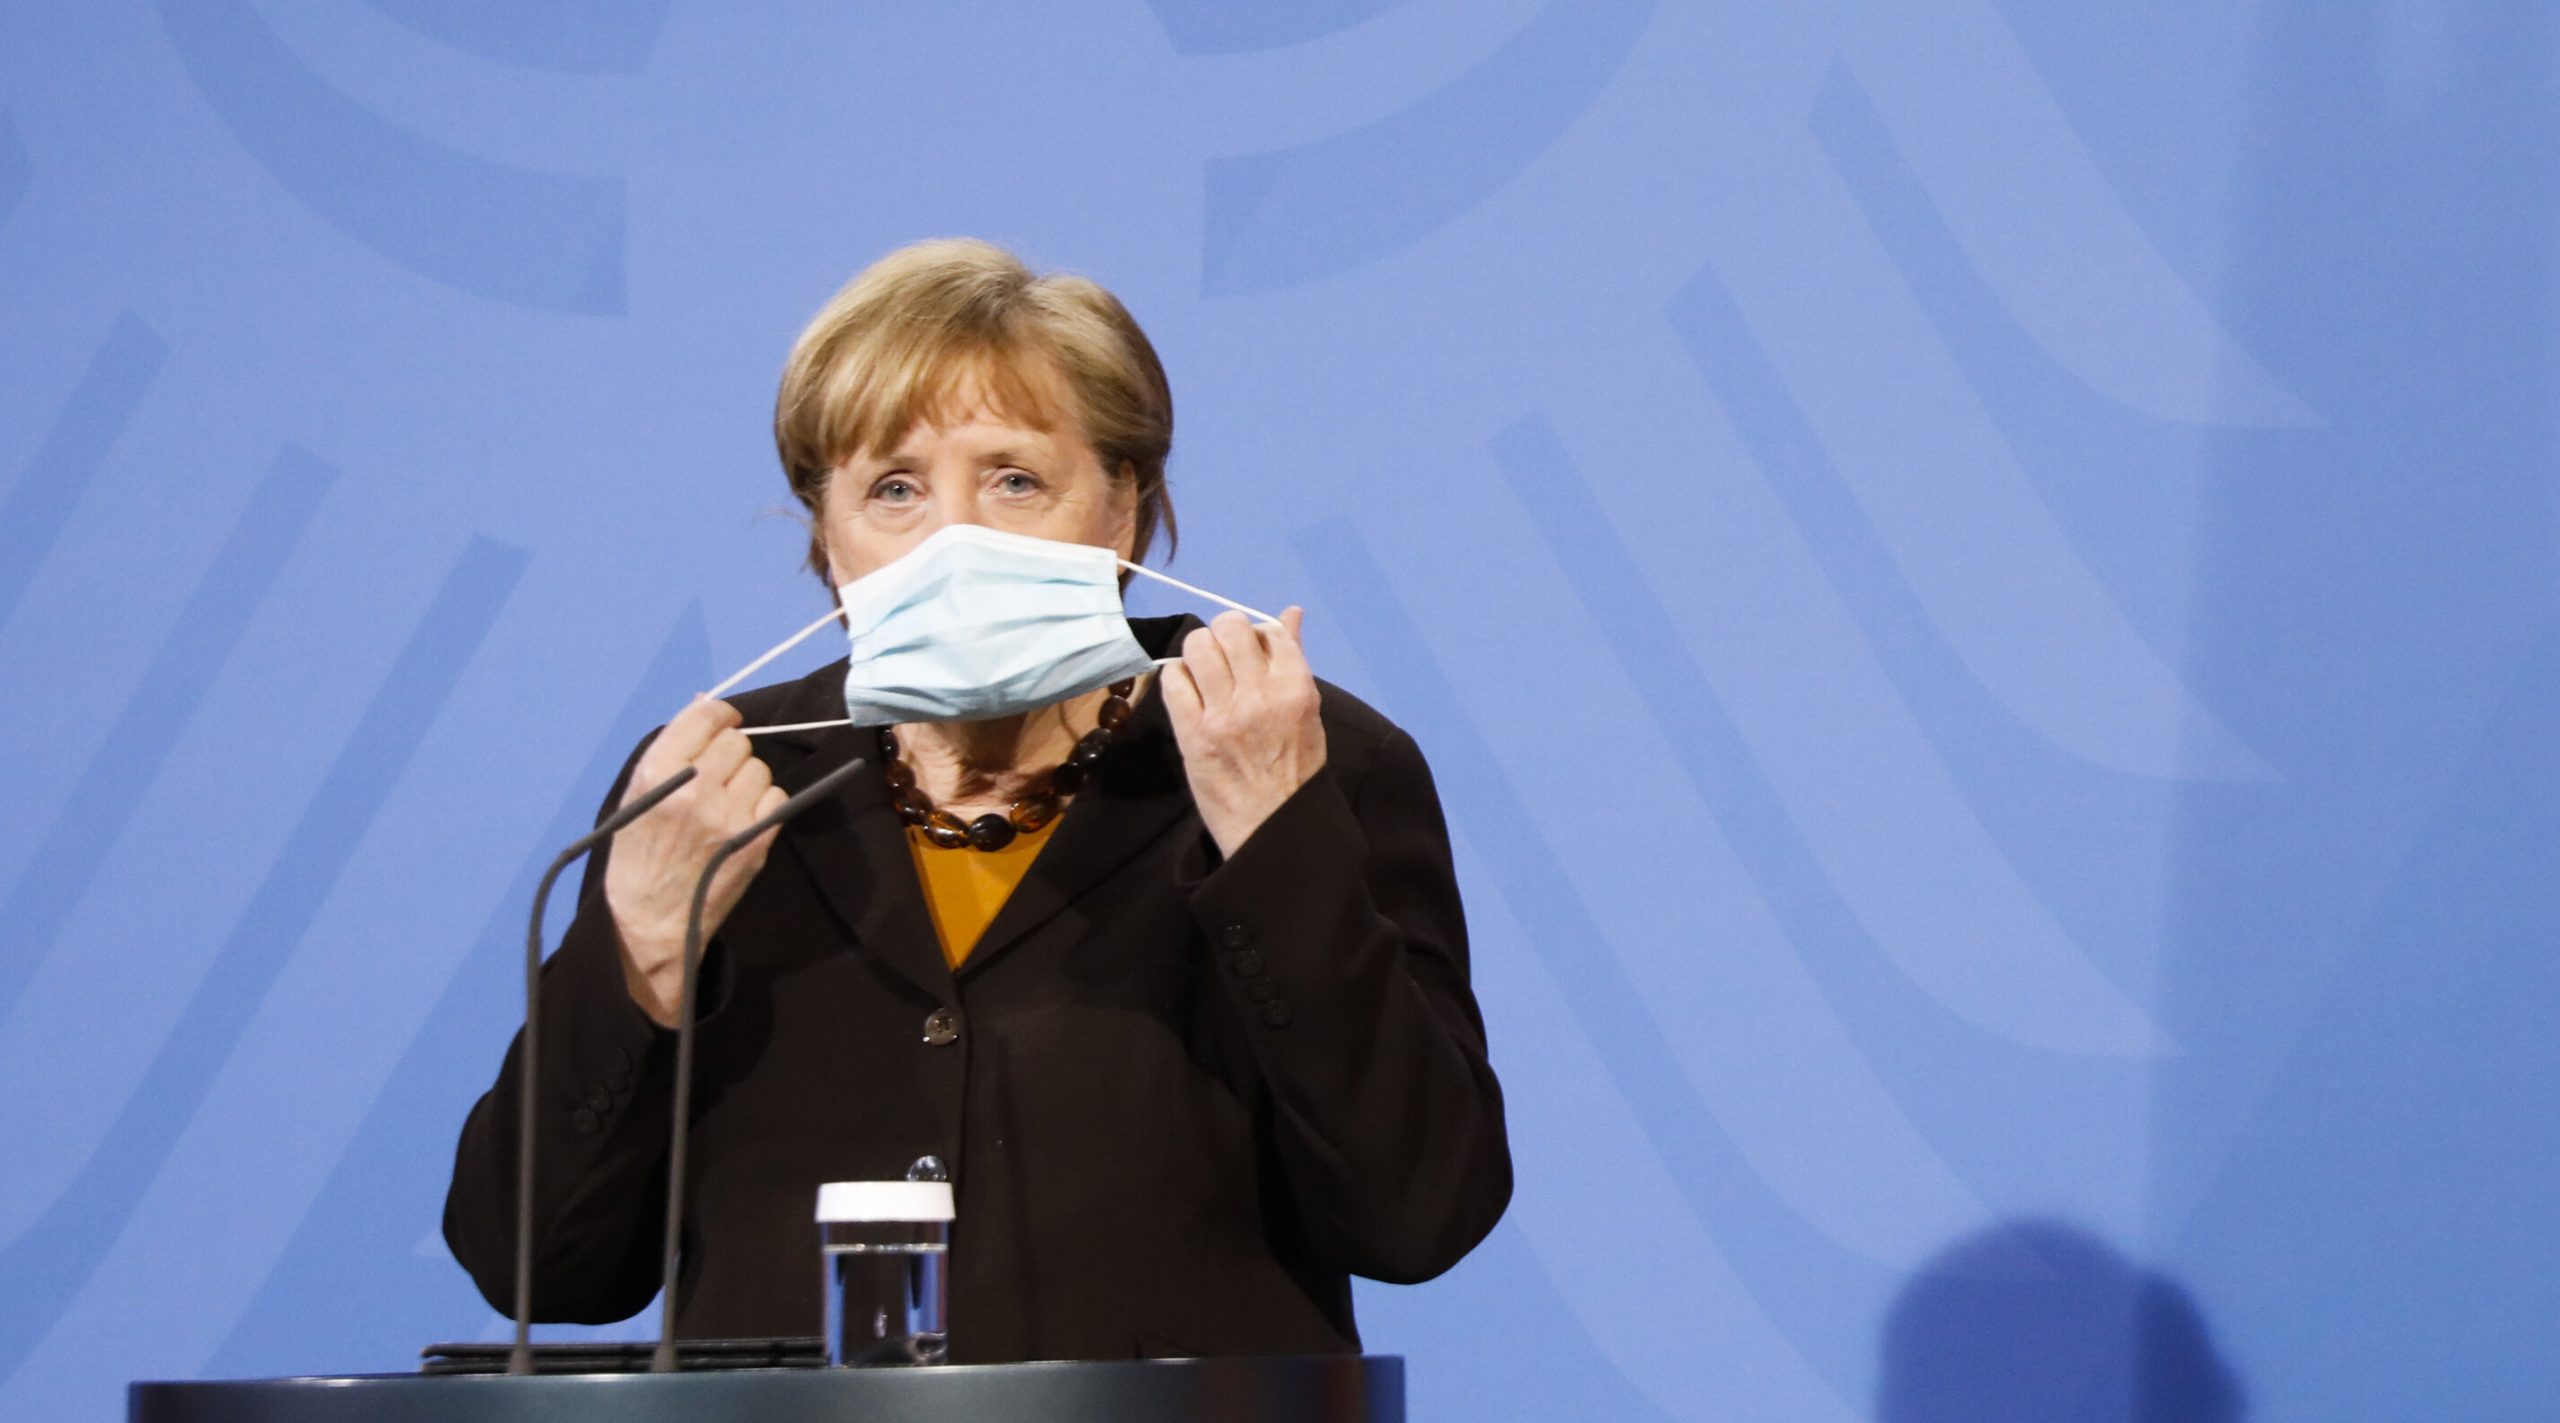 Restricțiile Covid vor fi relaxate pentru germanii vaccinați sau vindecați, anunță Angela Merkel